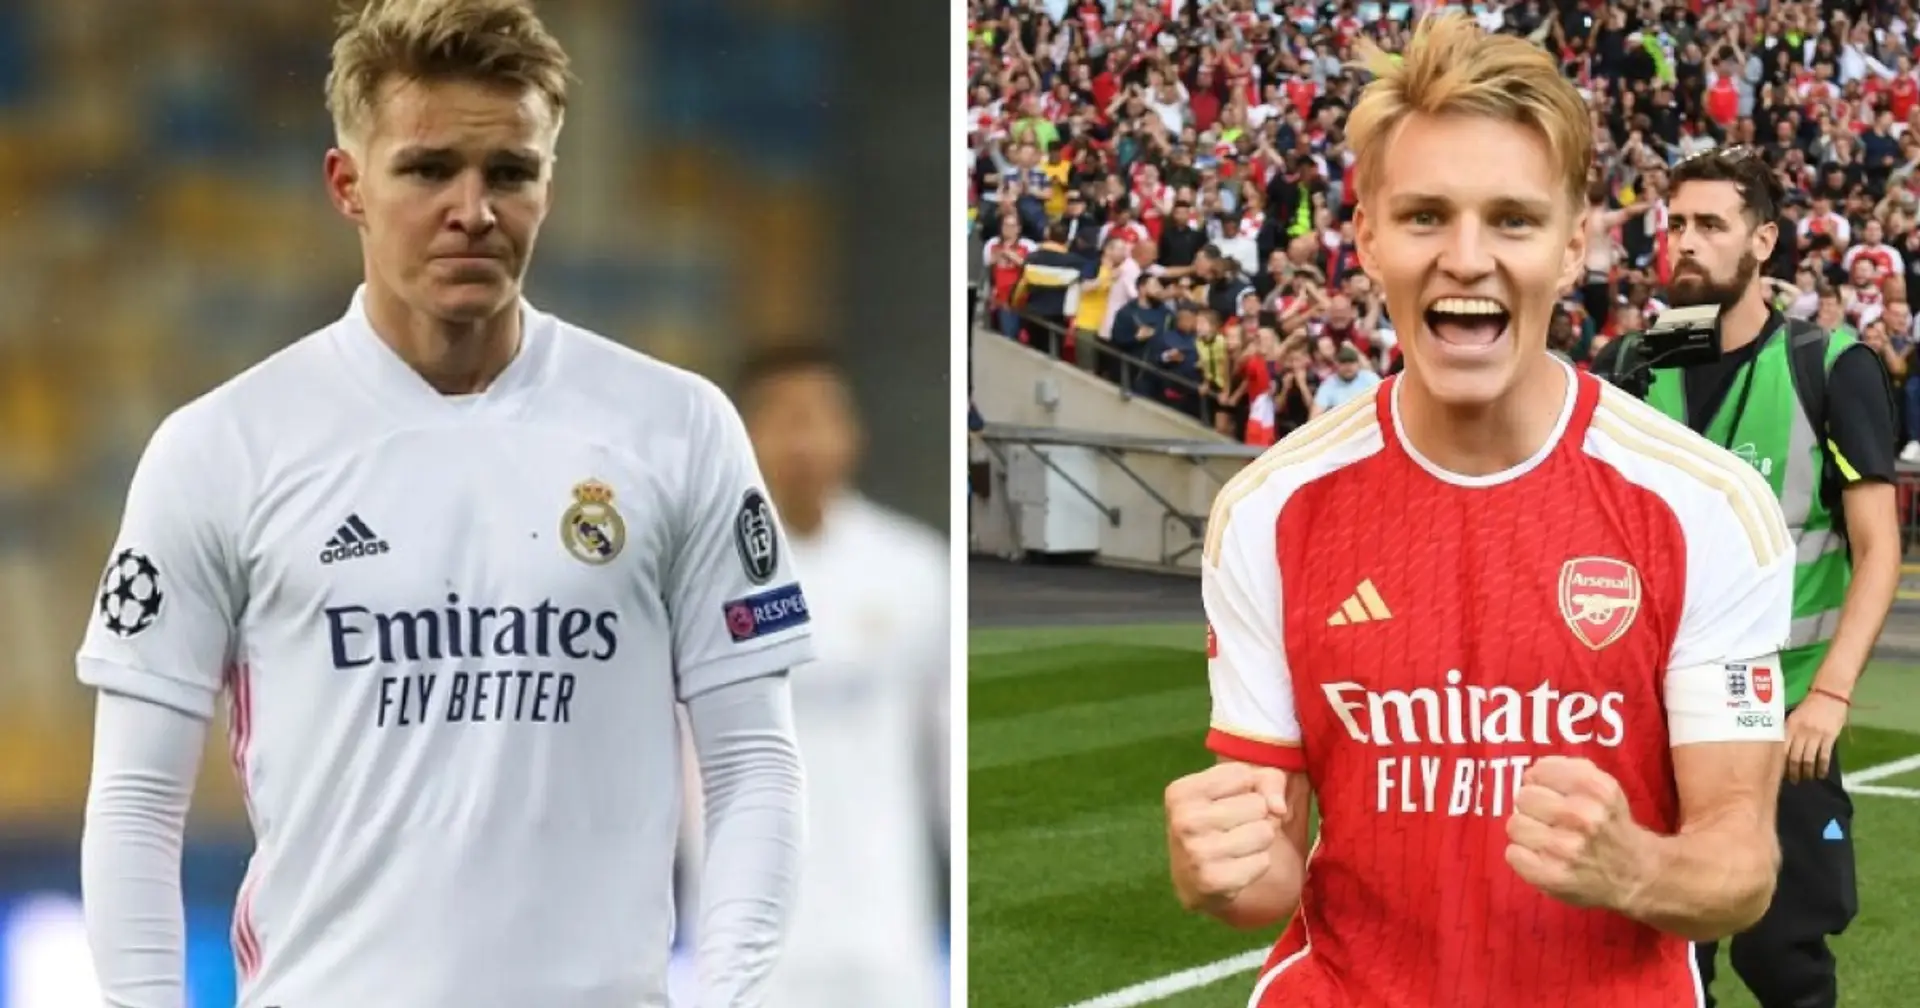 "War mir sicher, dass ich ein wichtiger Spieler werden würde": Ødegaard gibt zu, dass er nicht vorhatte, Madrid zu verlassen